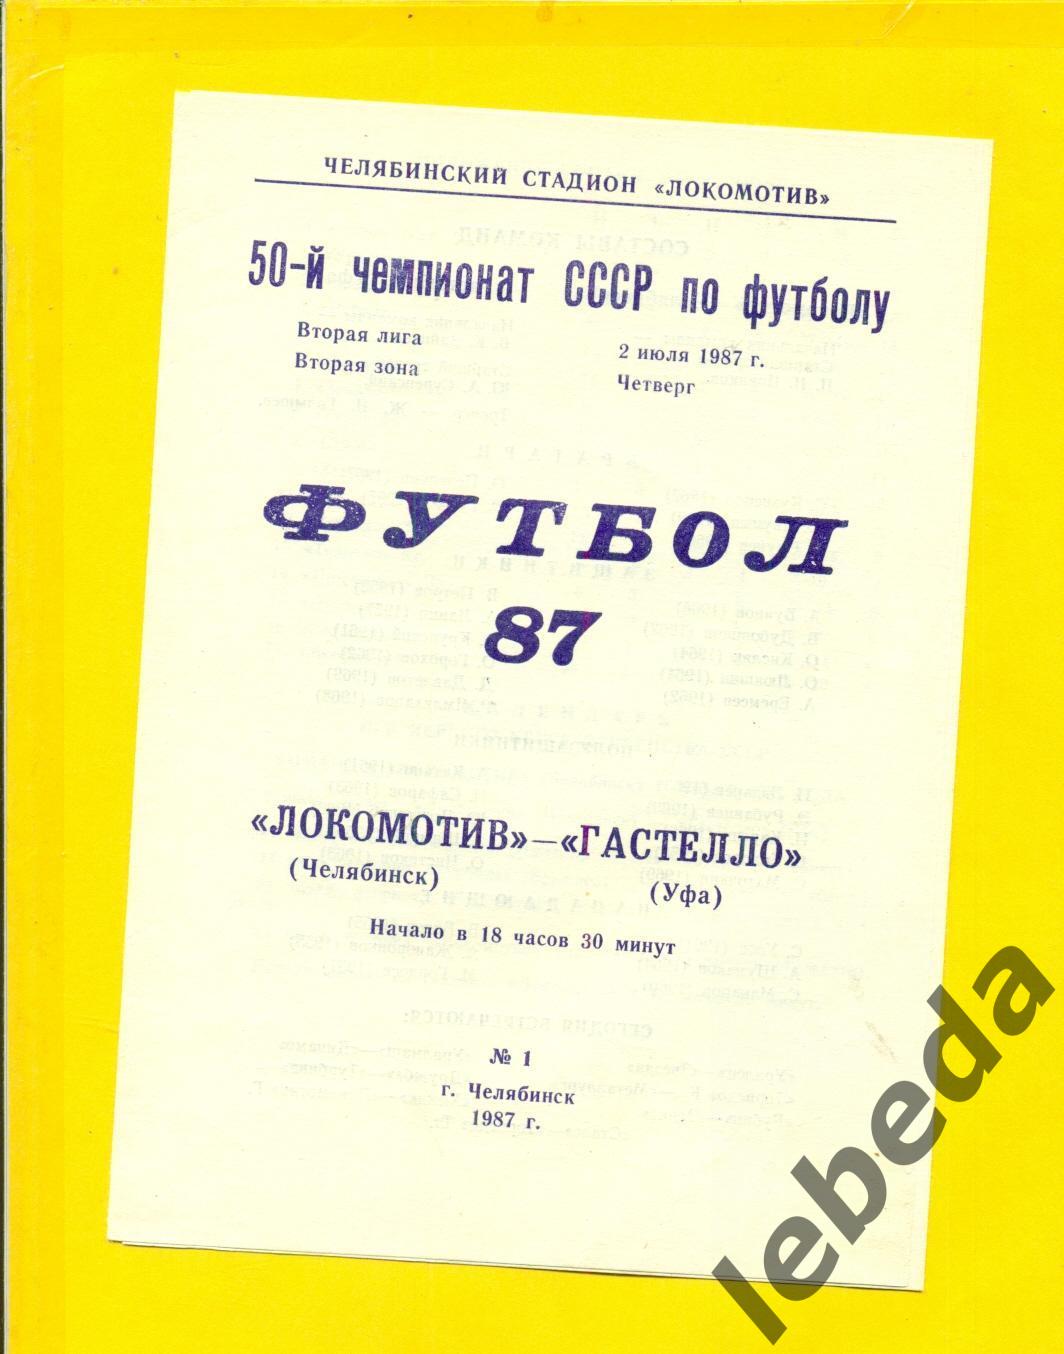 Локомотив Челябинск - Гастелло Уфа - 1987 г.(02.07.87.)